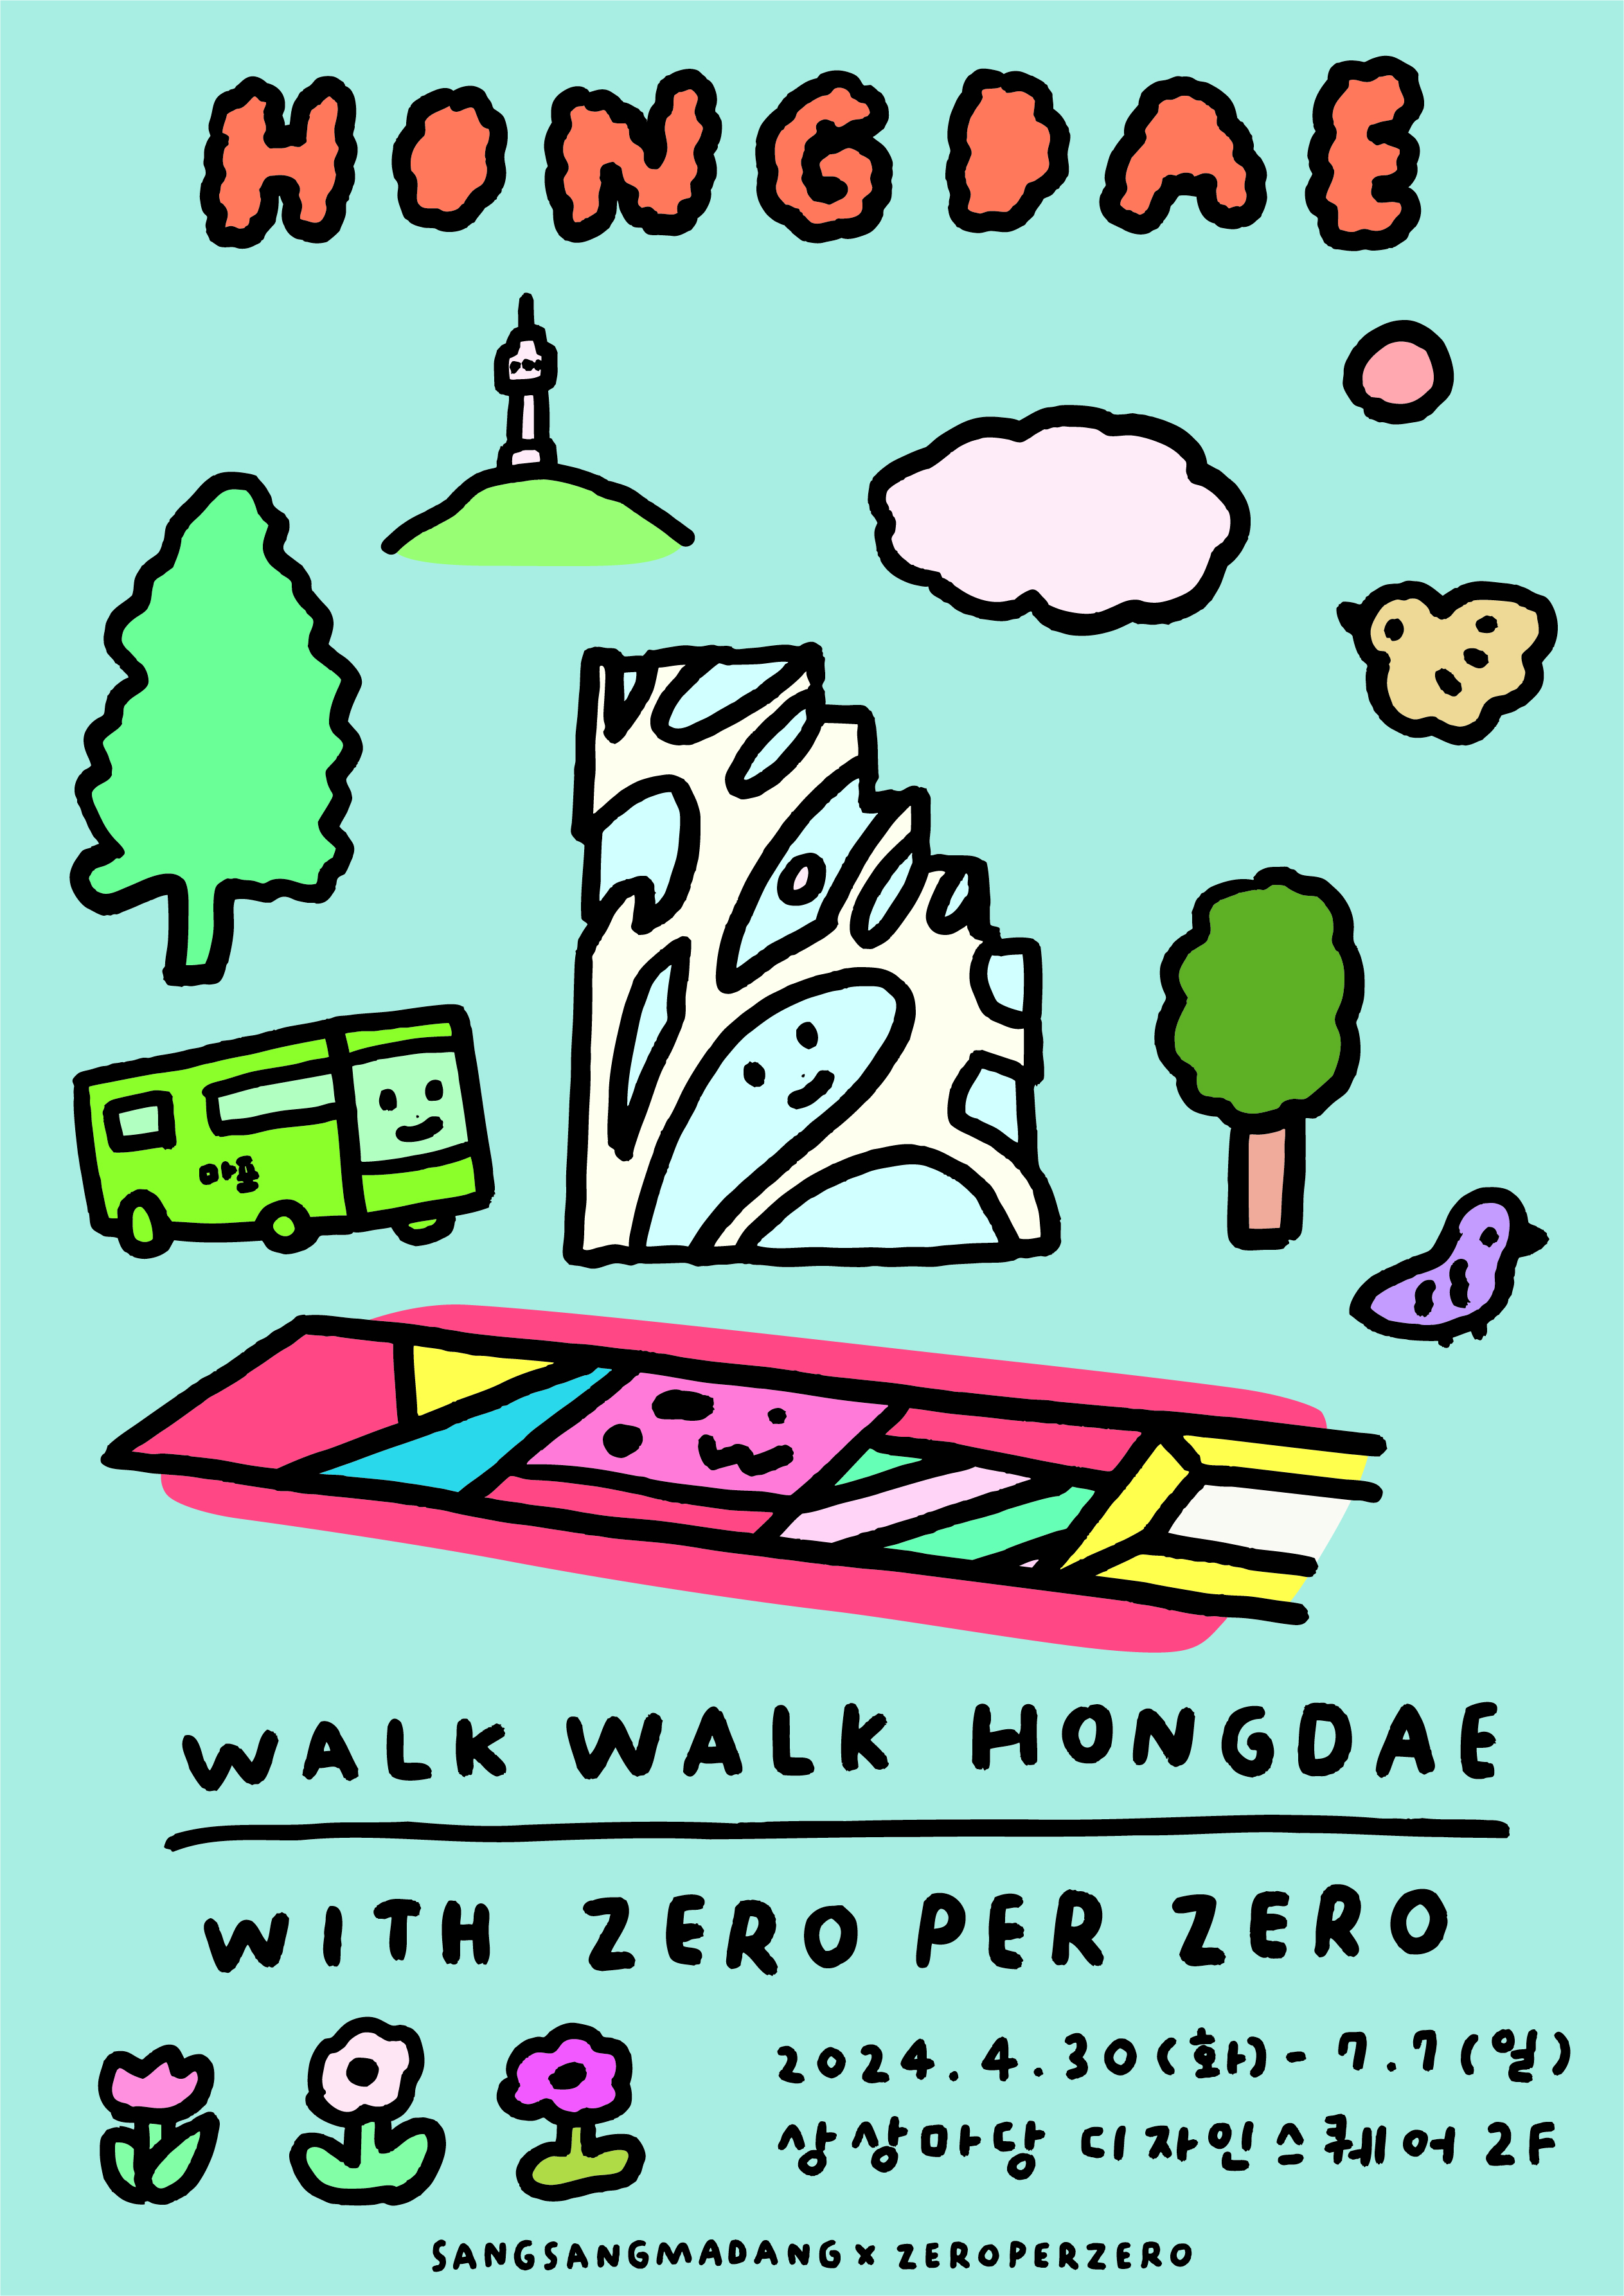 WALK WALK HONGDAE WITH ZERO PER ZERO